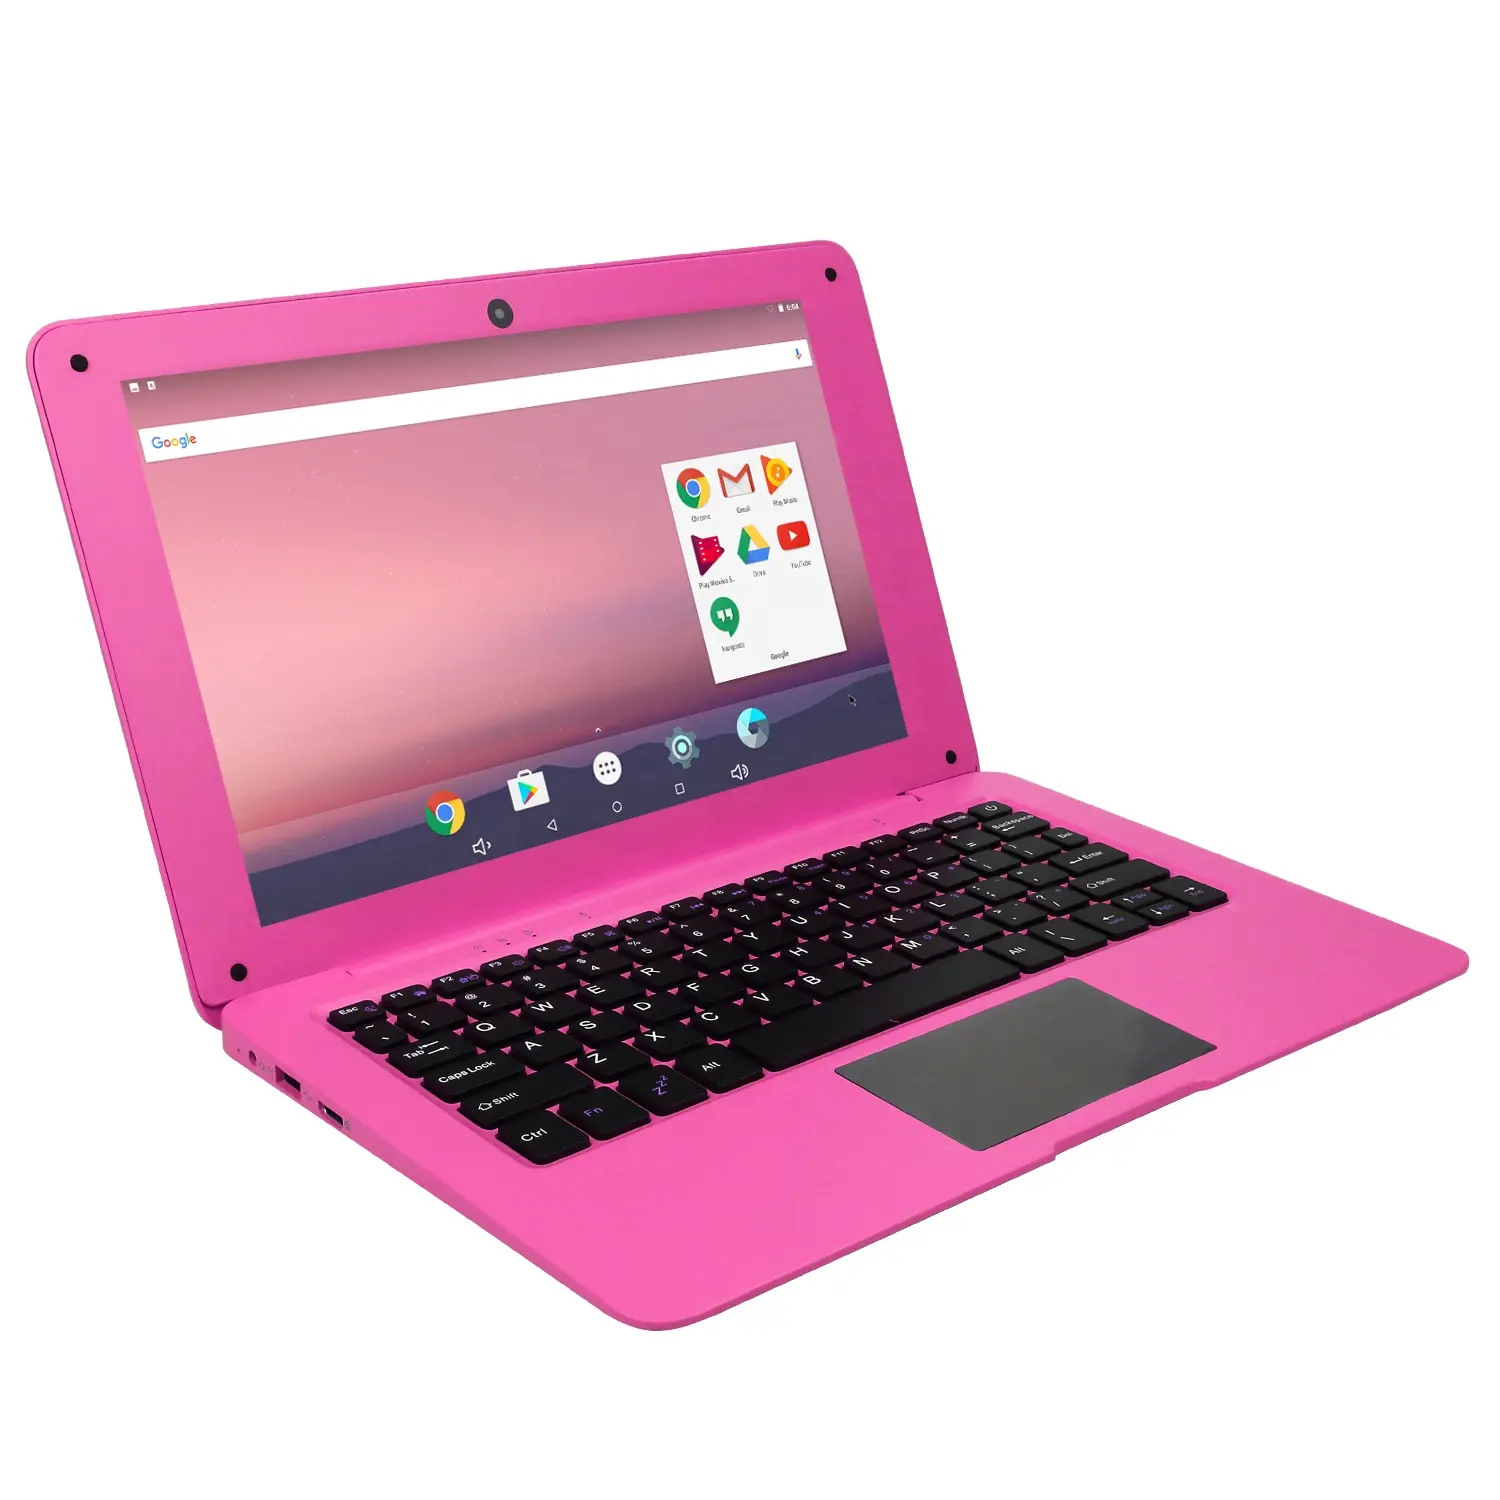 Laptop Free Sample Wholesales 10.1 Inch 800*1280 Ips Screen Laptop 2gb Ram 16/32gb emmc Mini Laptop